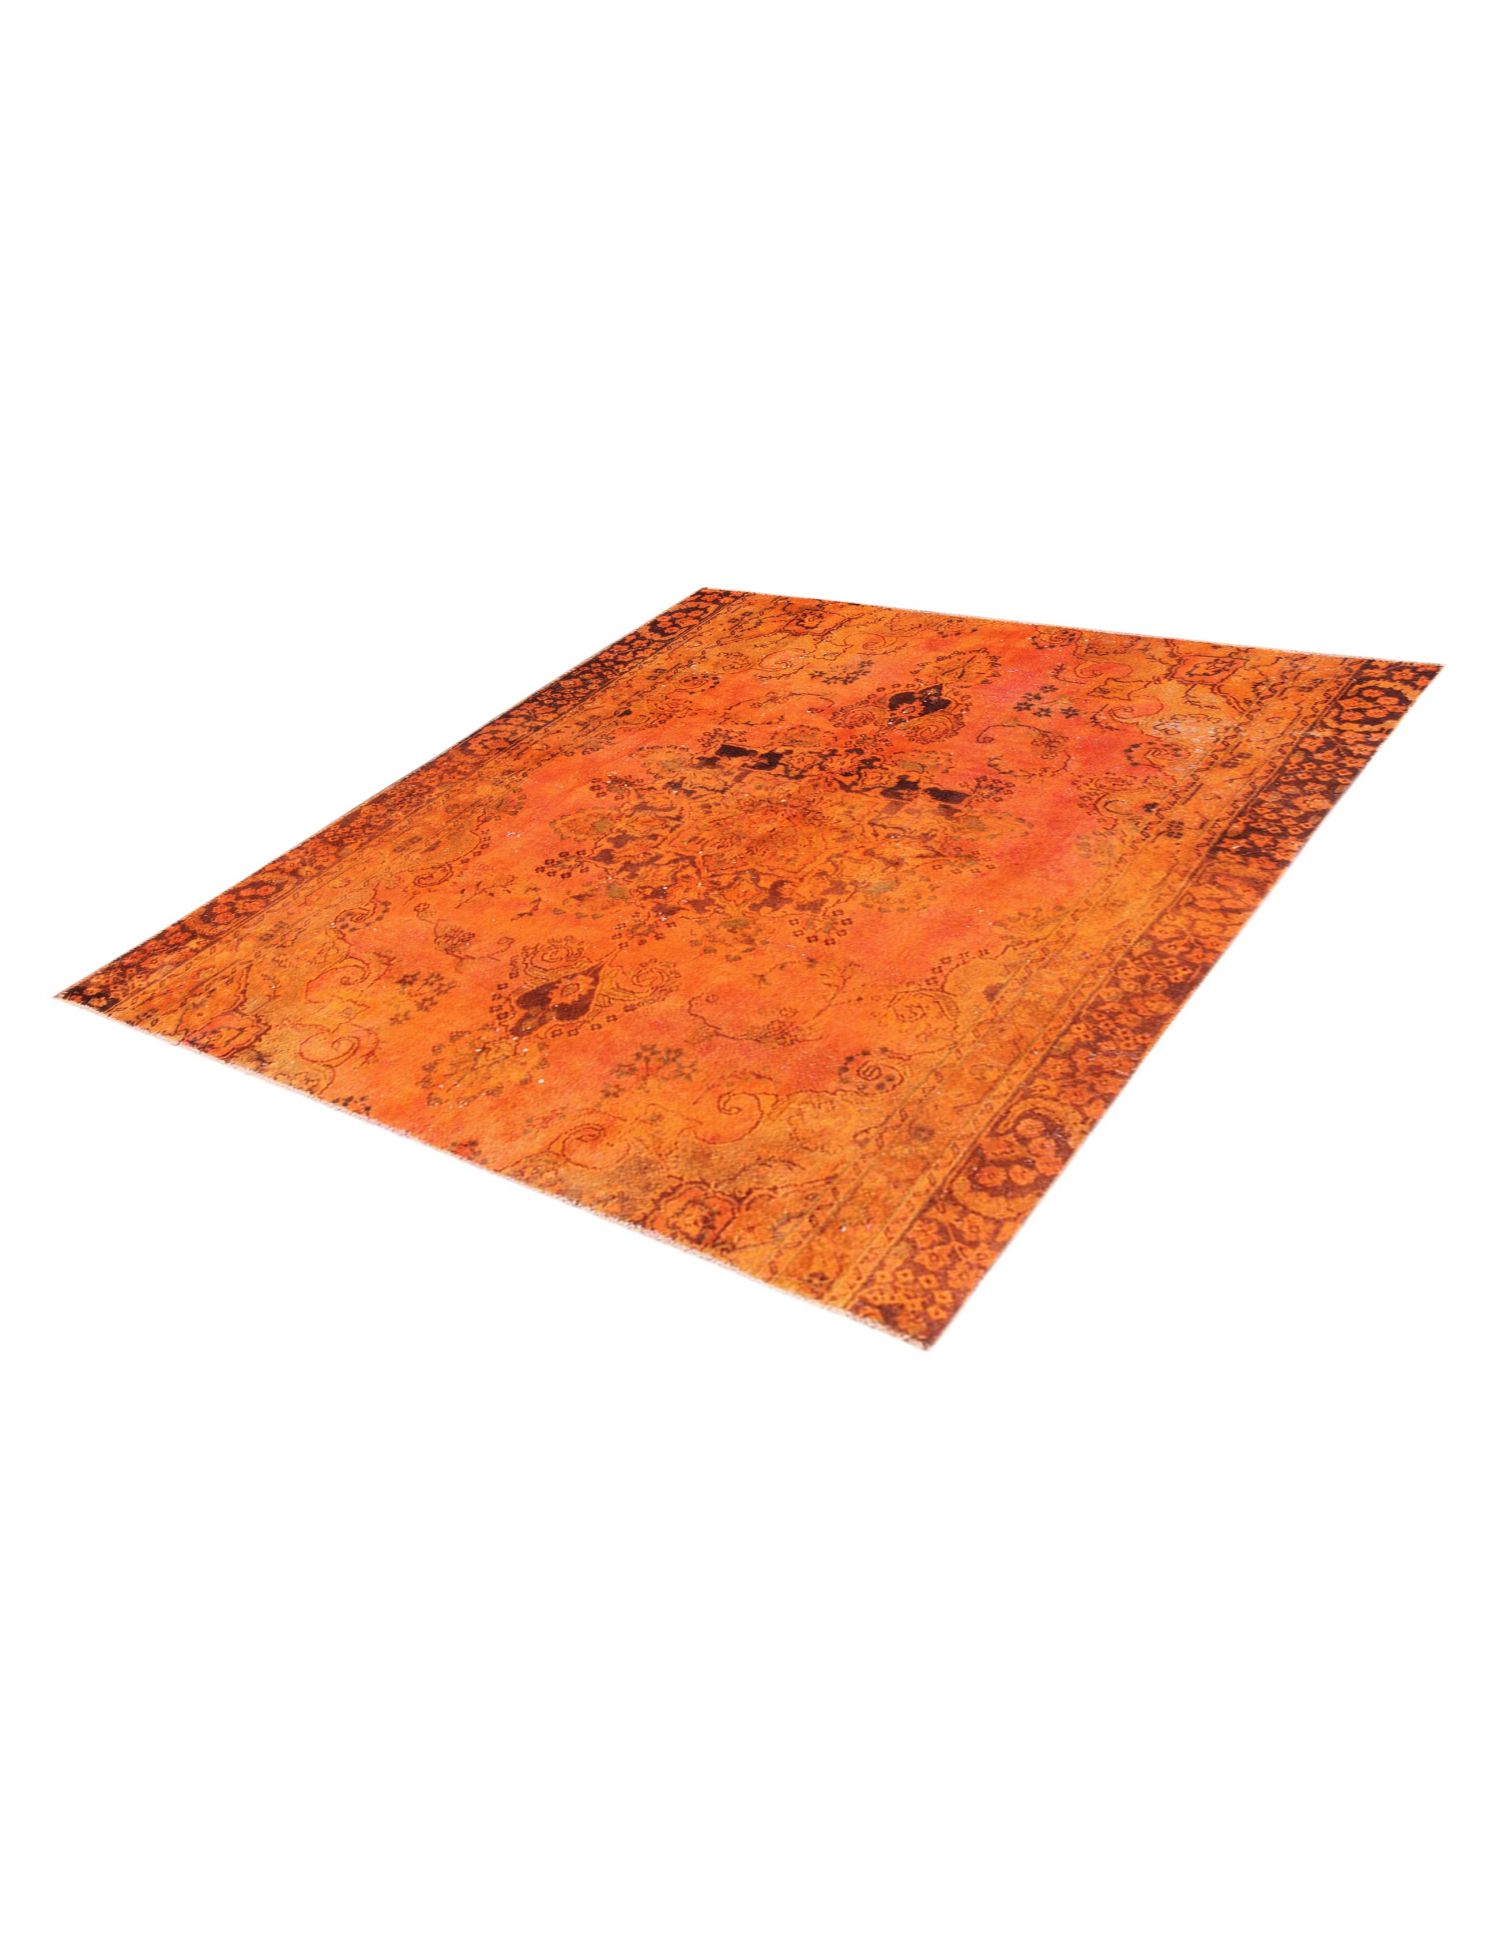 Persischer Vintage Teppich  orange <br/>200 x 175 cm